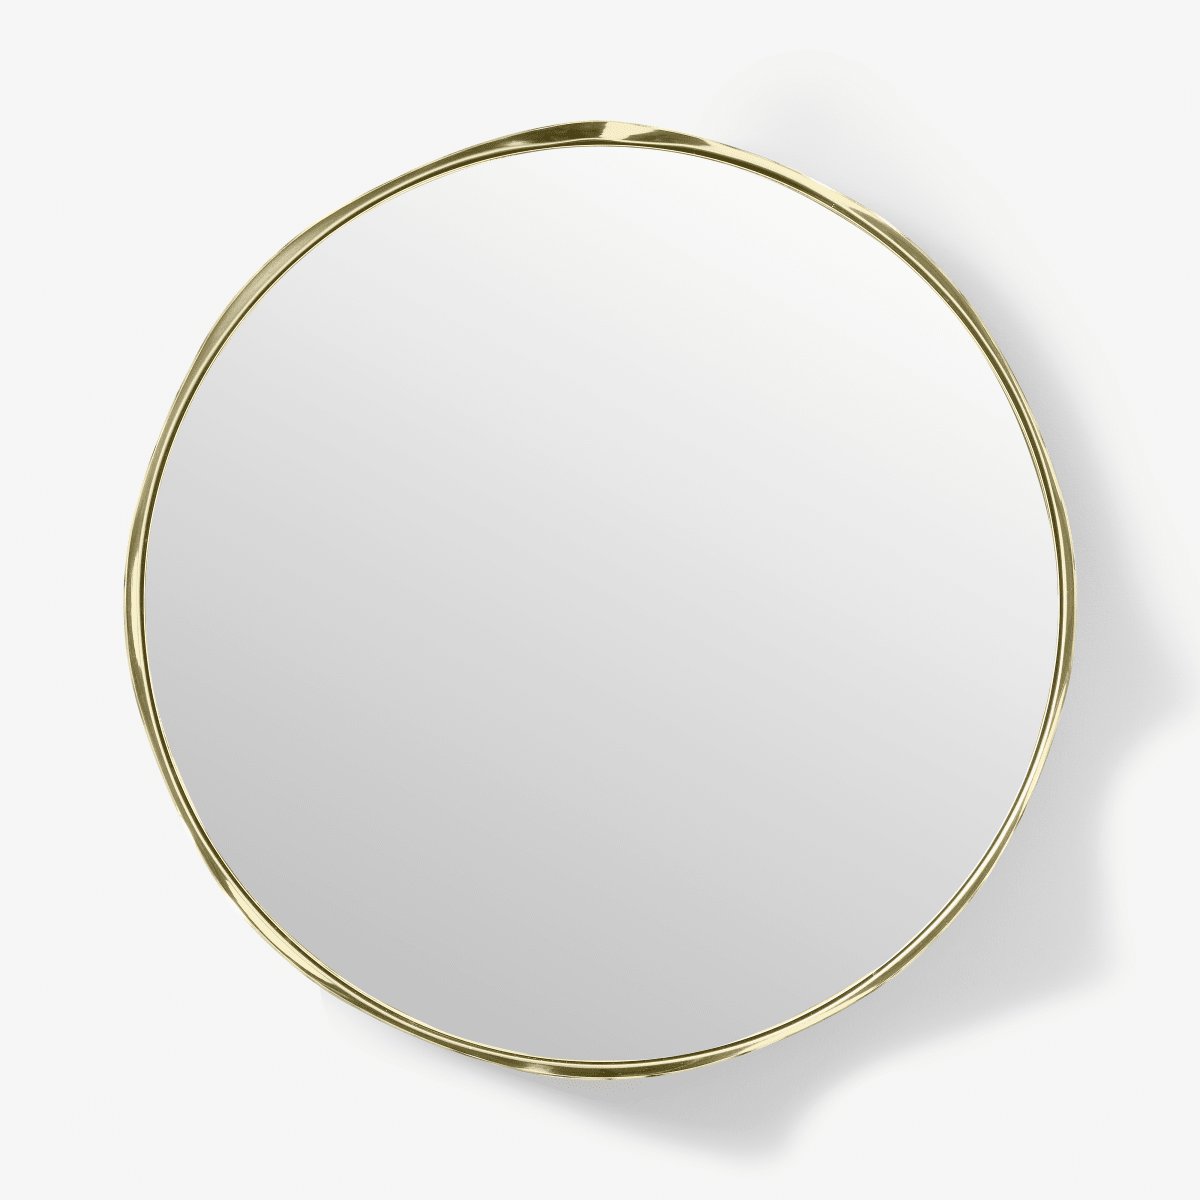 2LG Wavy Round Wall Mirror, 60 cm, Champagne Brass